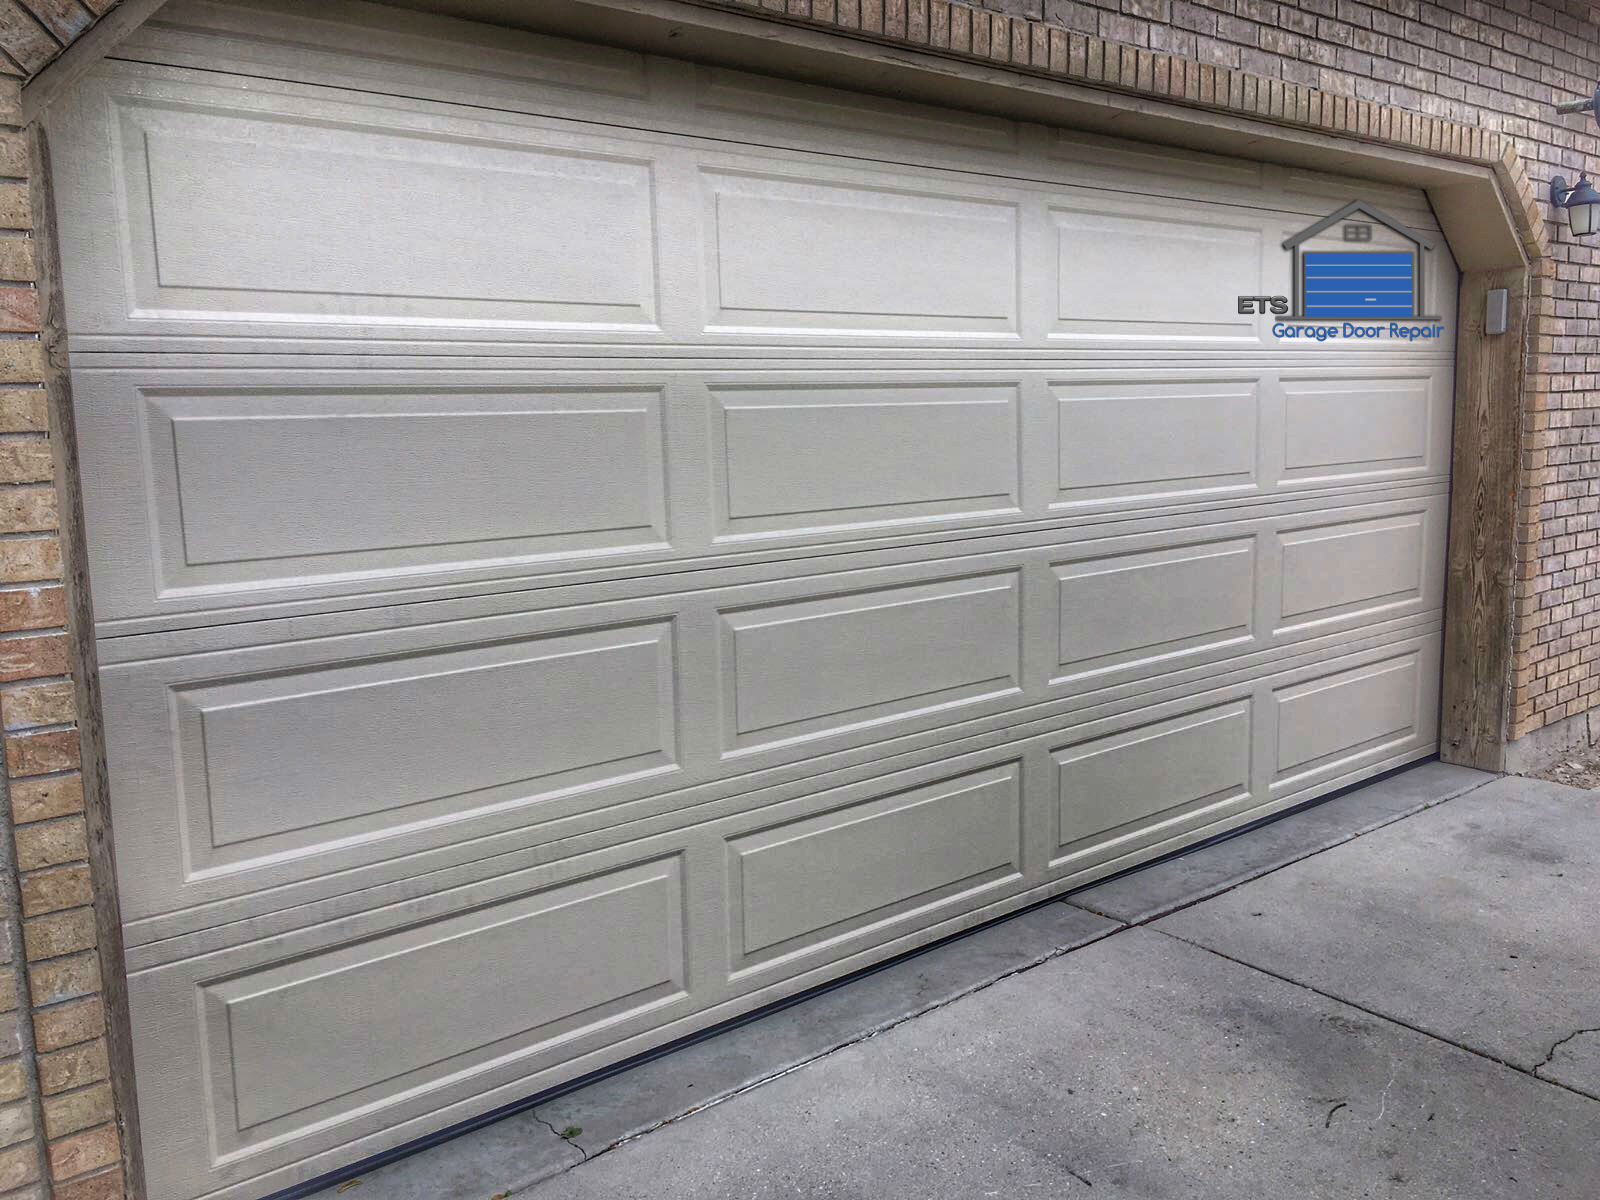 ETS Garage Door Repair Of Happy Valley - Garage Door Repair & Installation Services4